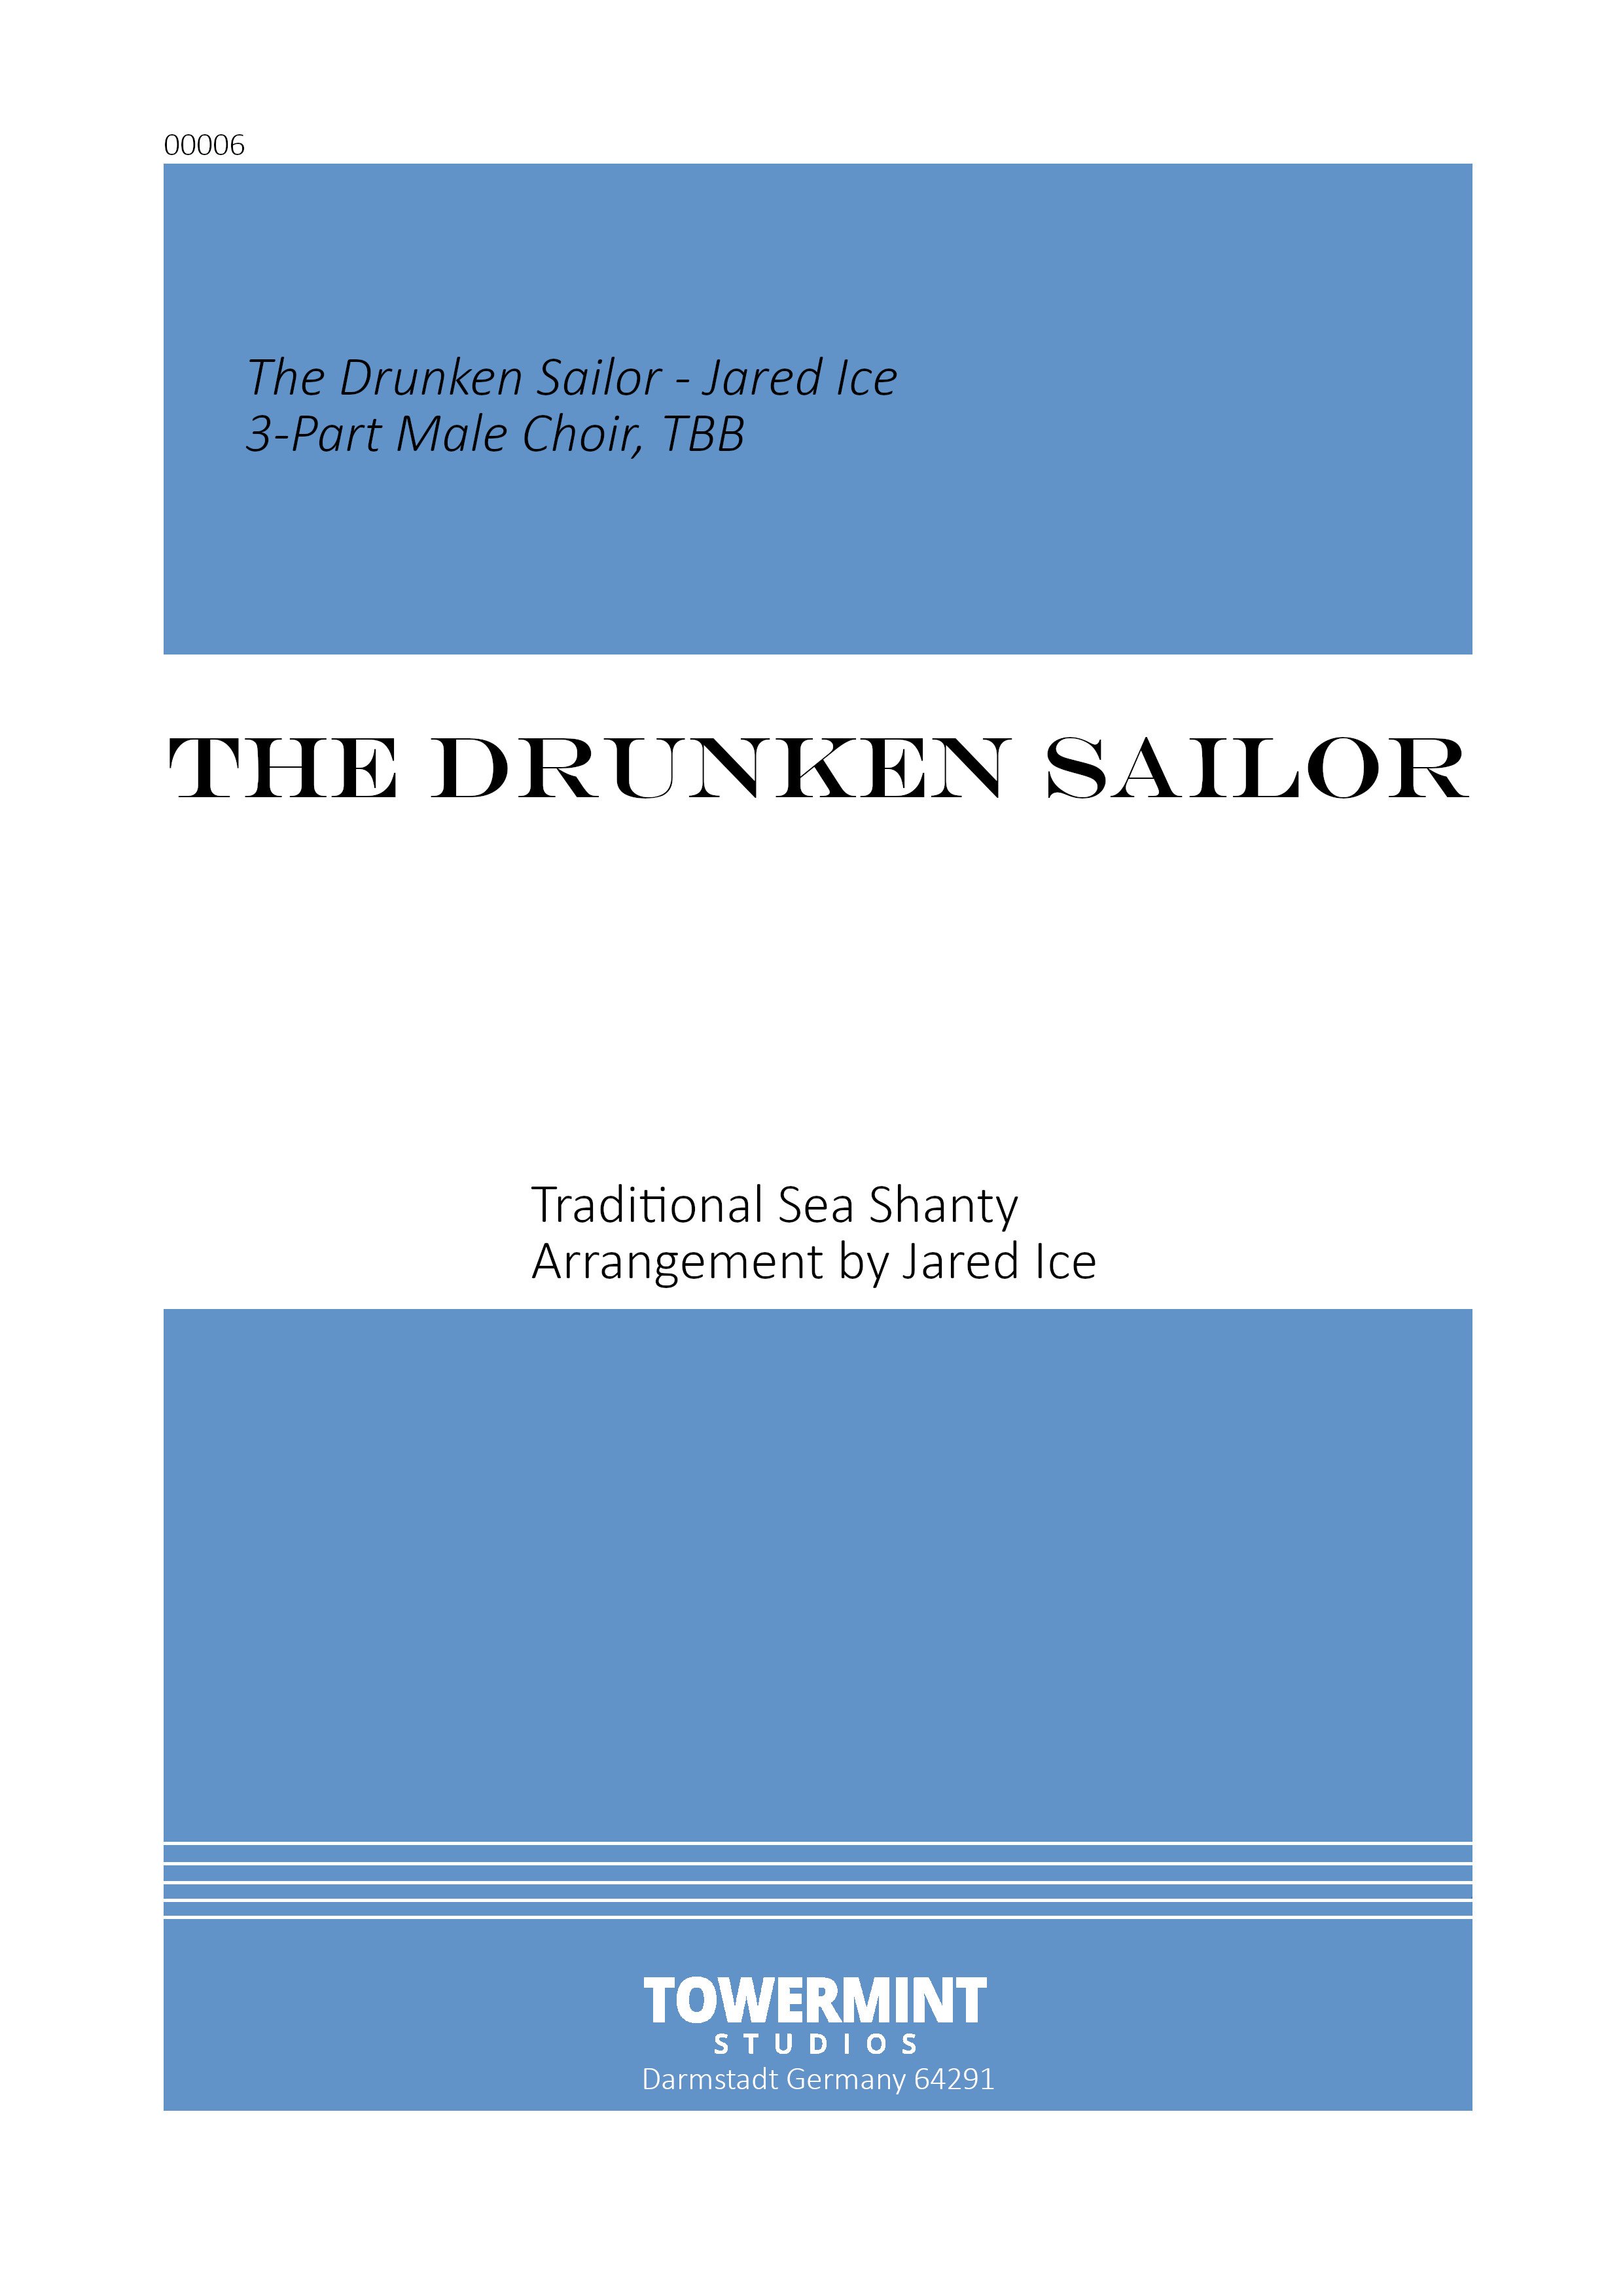 The Drunken Sailor Cover.jpg